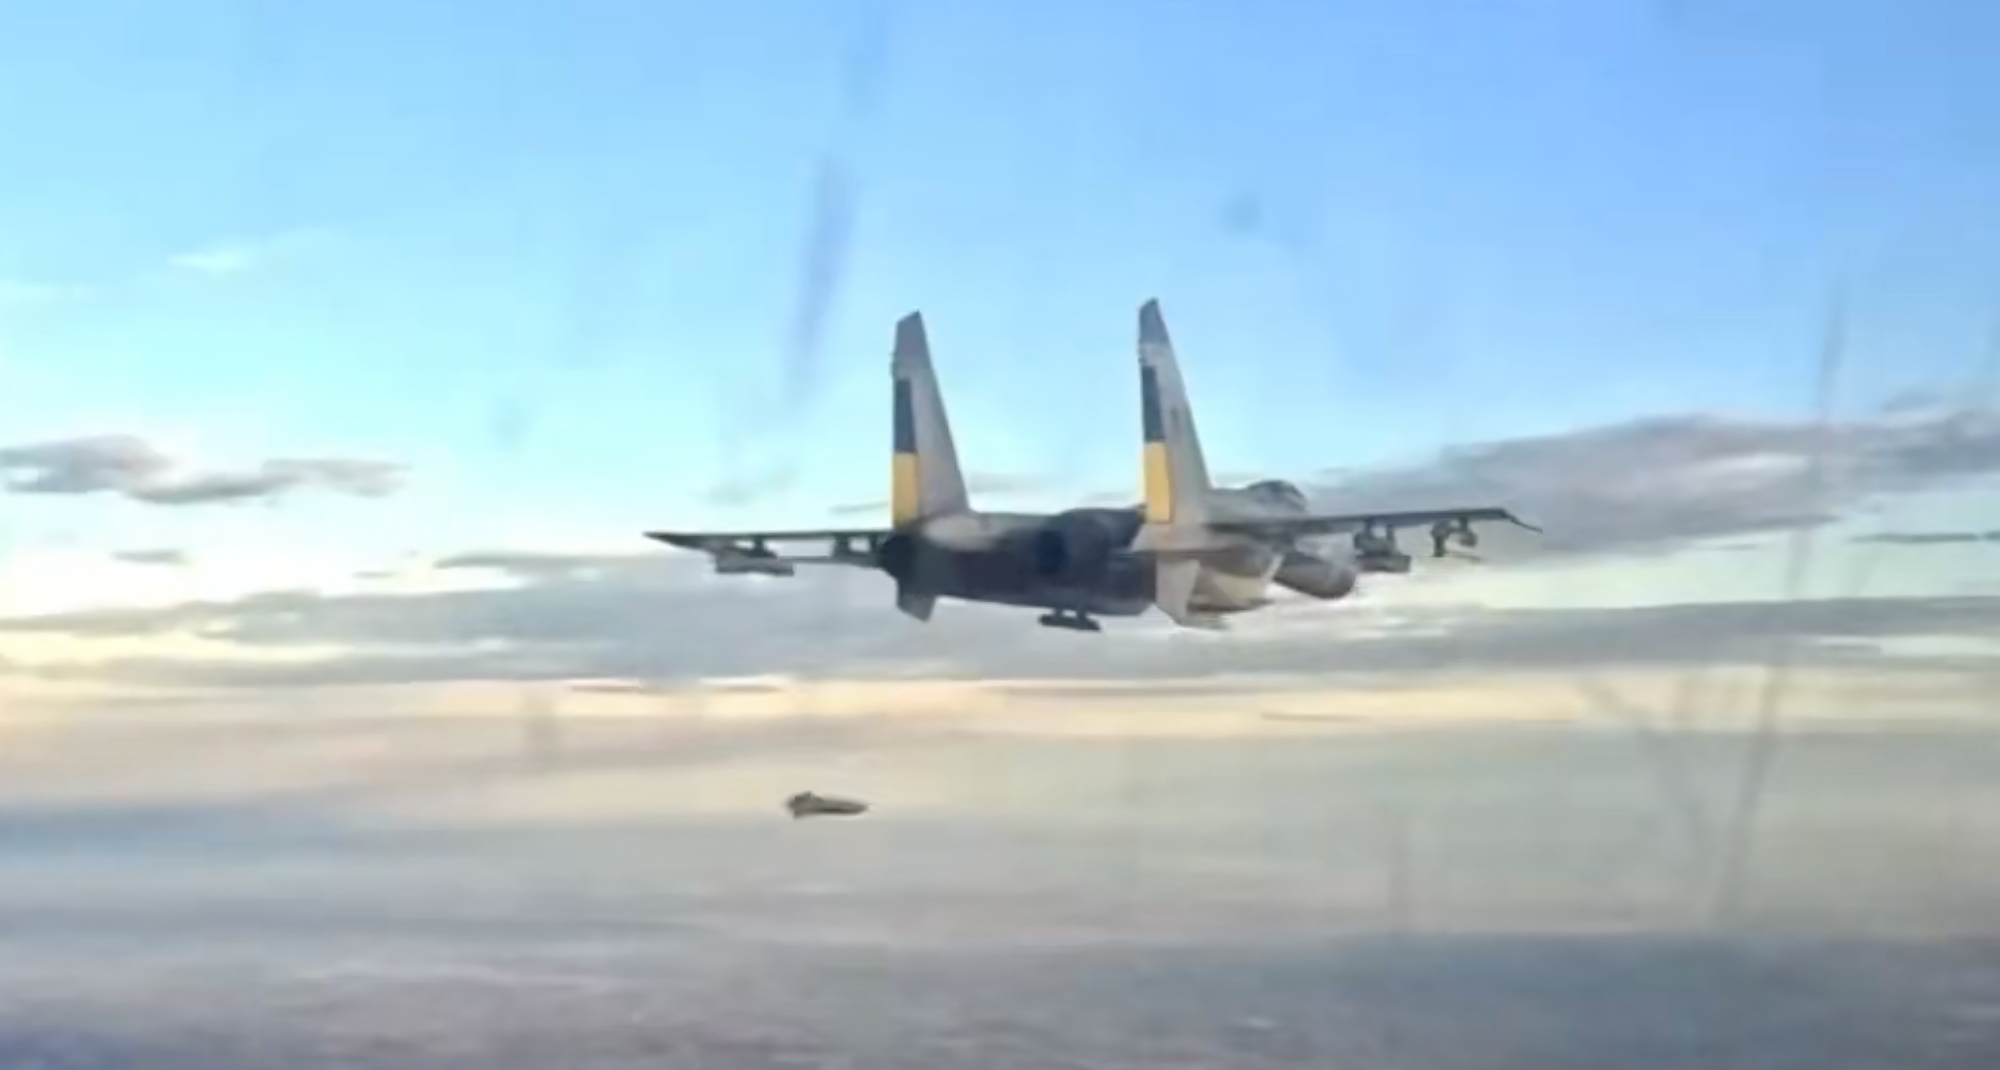 Unikalne nagranie: ukraińskie myśliwce Su-27 wystrzeliwują francuskie bomby AASM-250 Hammer i amerykańskie pociski AGM-88 HARMS